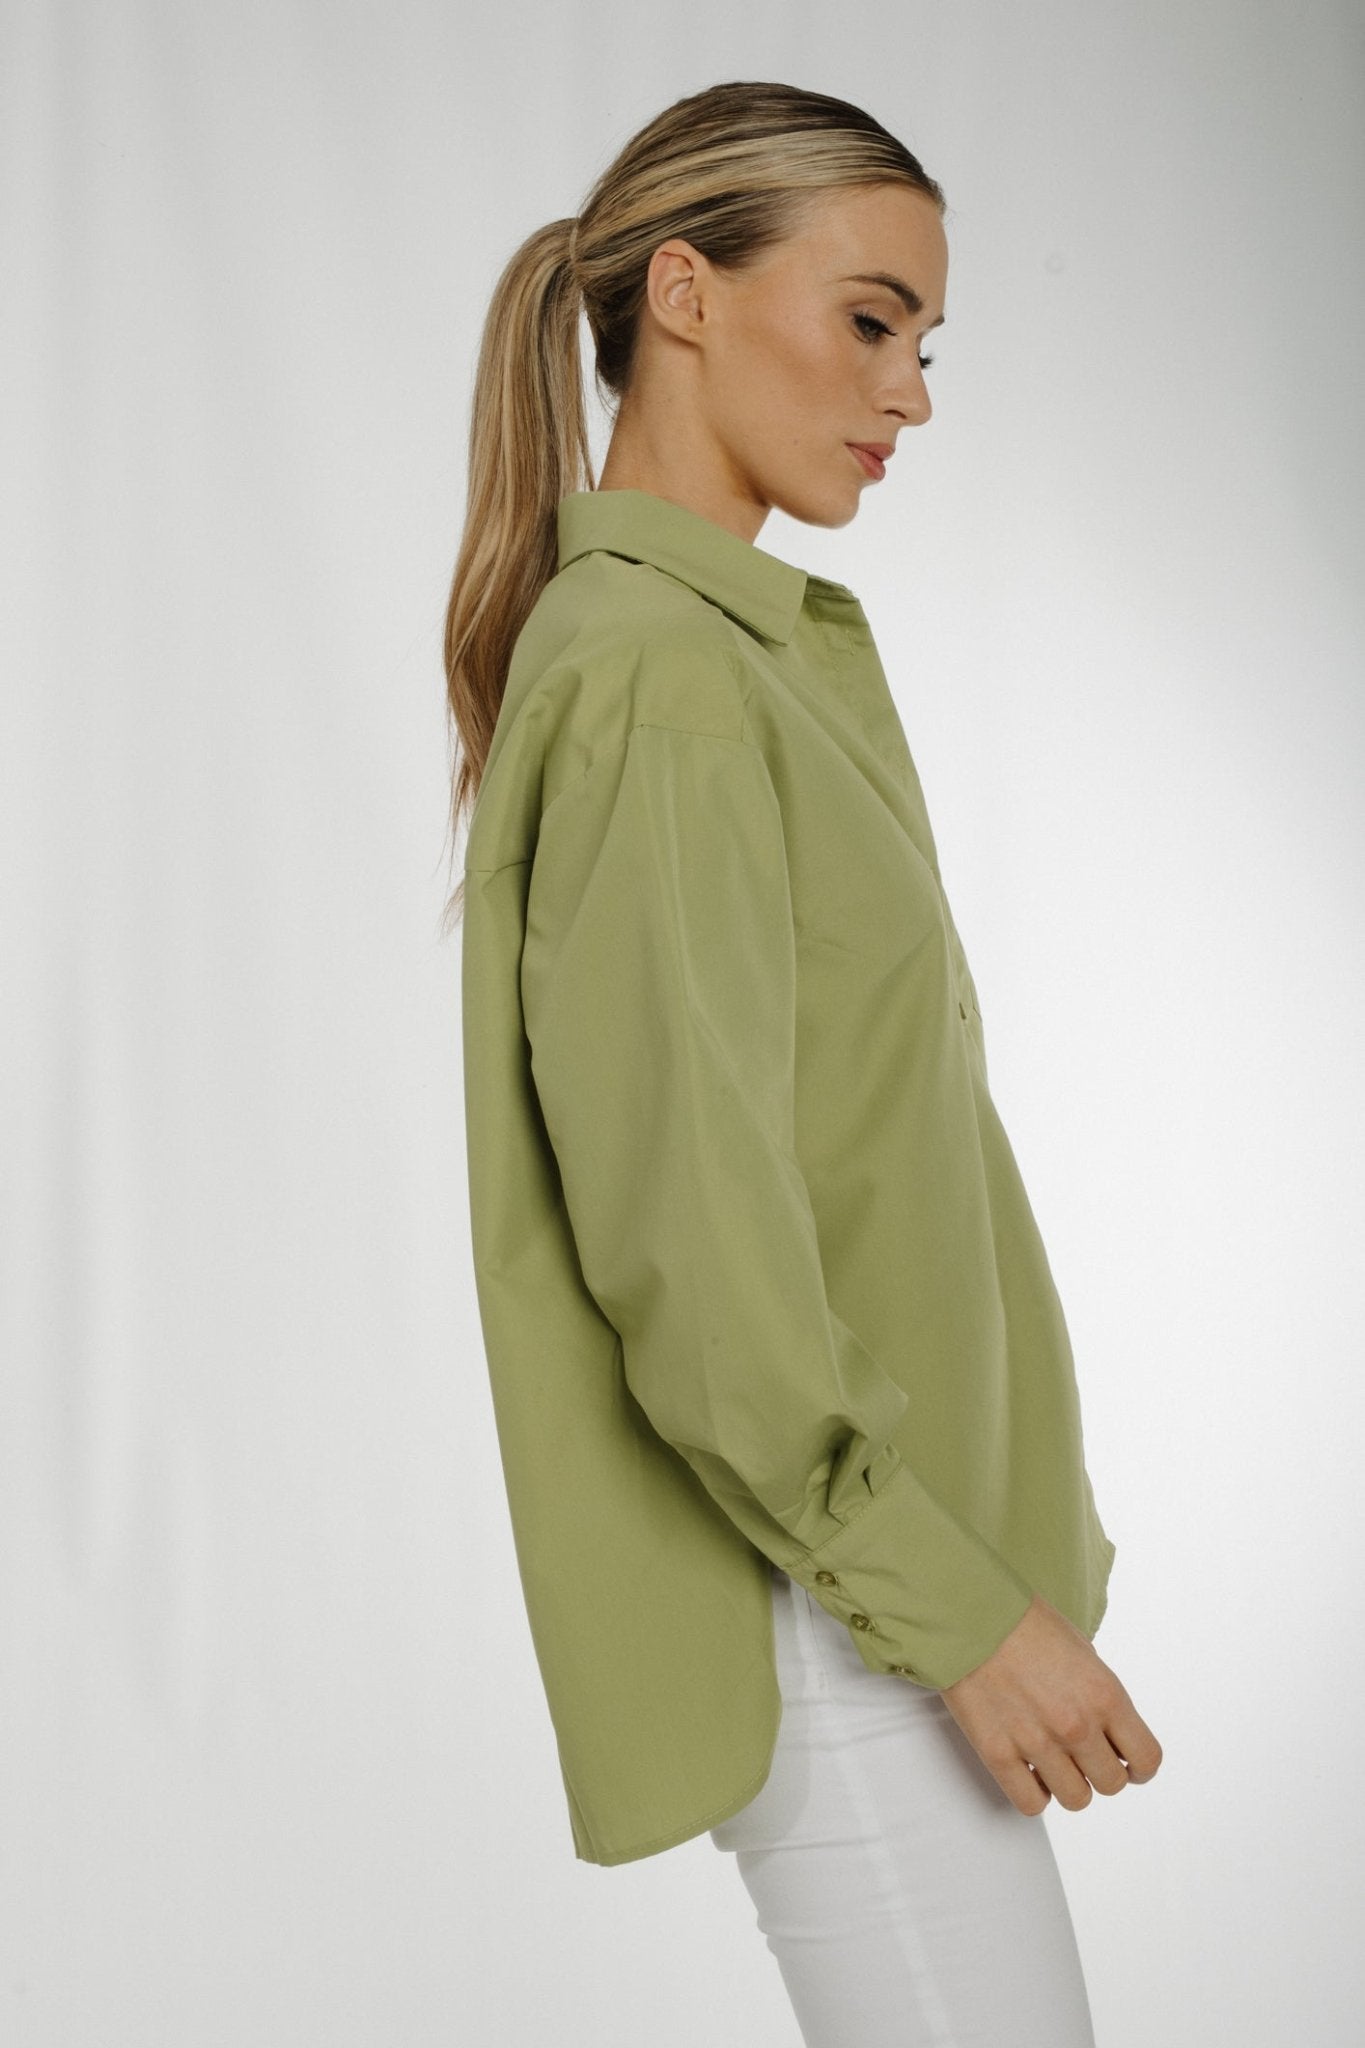 Kate Shirt In Green - The Walk in Wardrobe